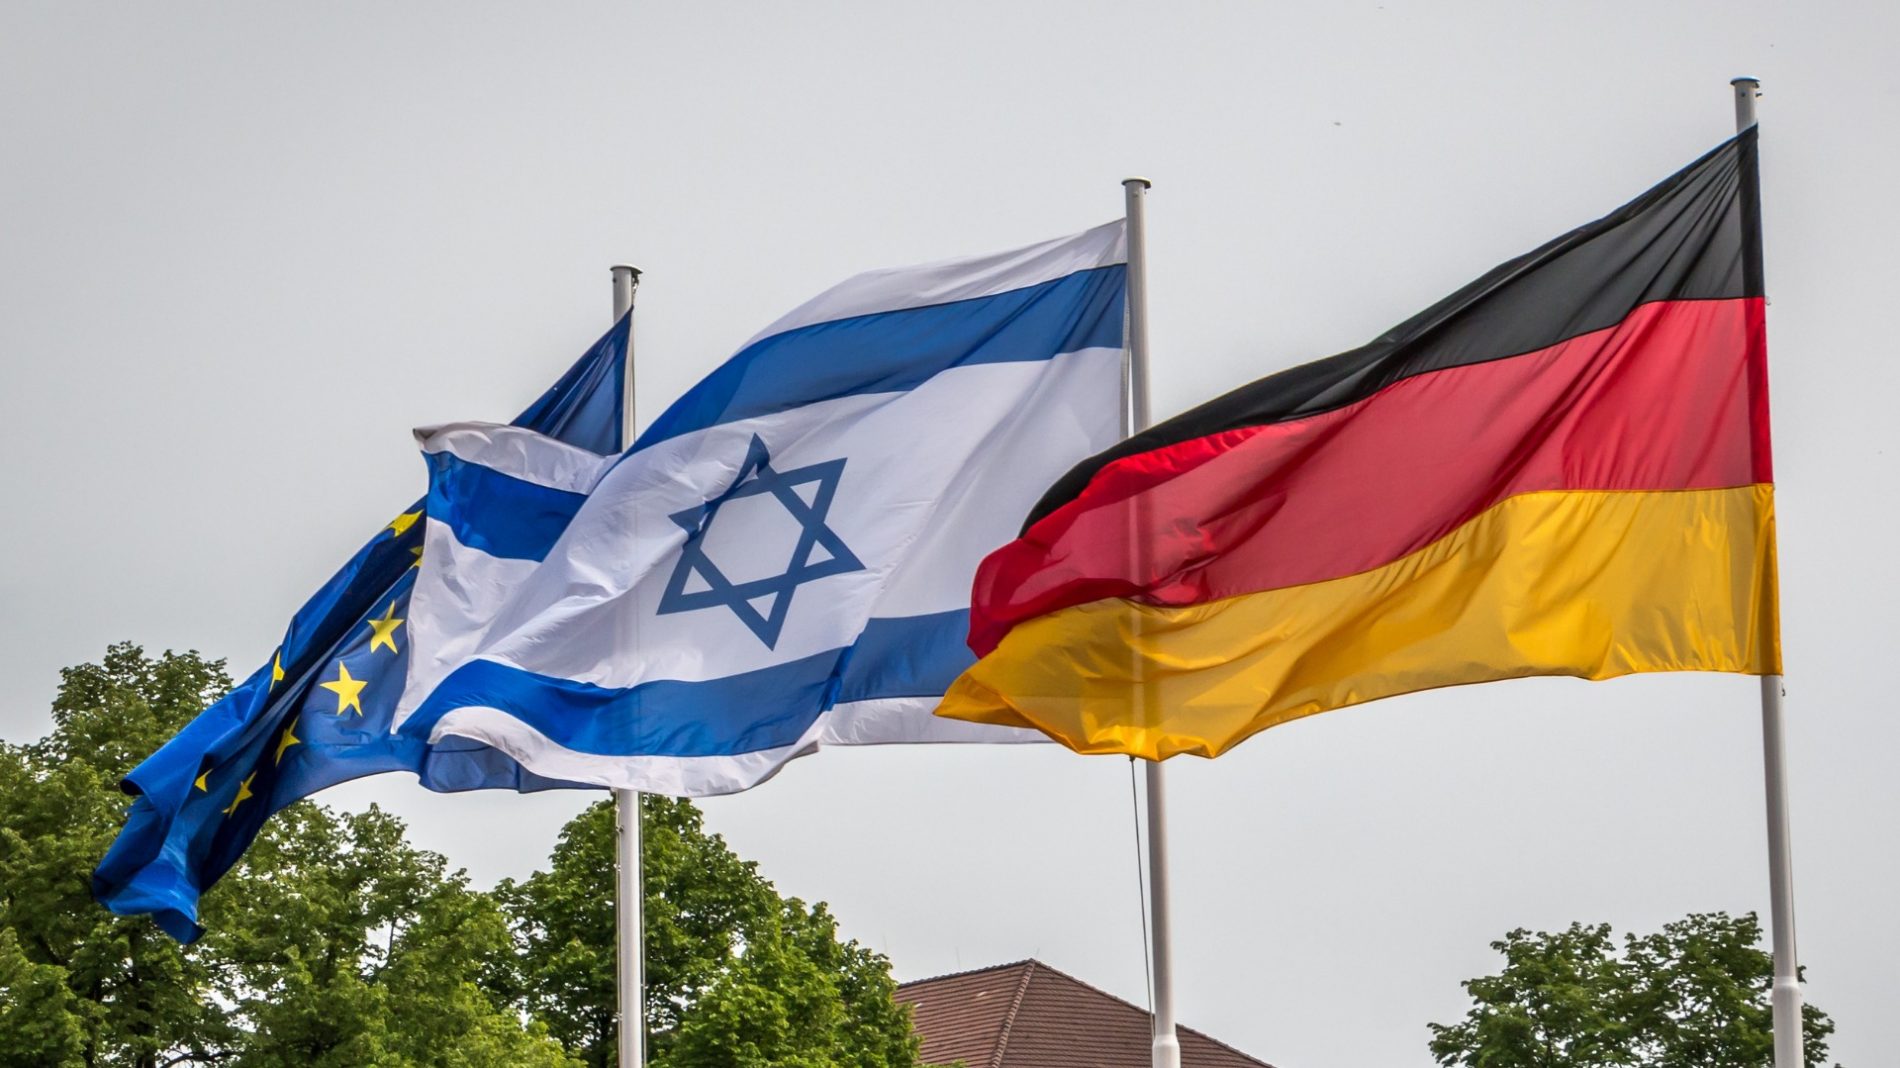 Nepokolebljiva podrška političara i medija: Njemački marš ka neliberalizmu u ime odbrane Izraela